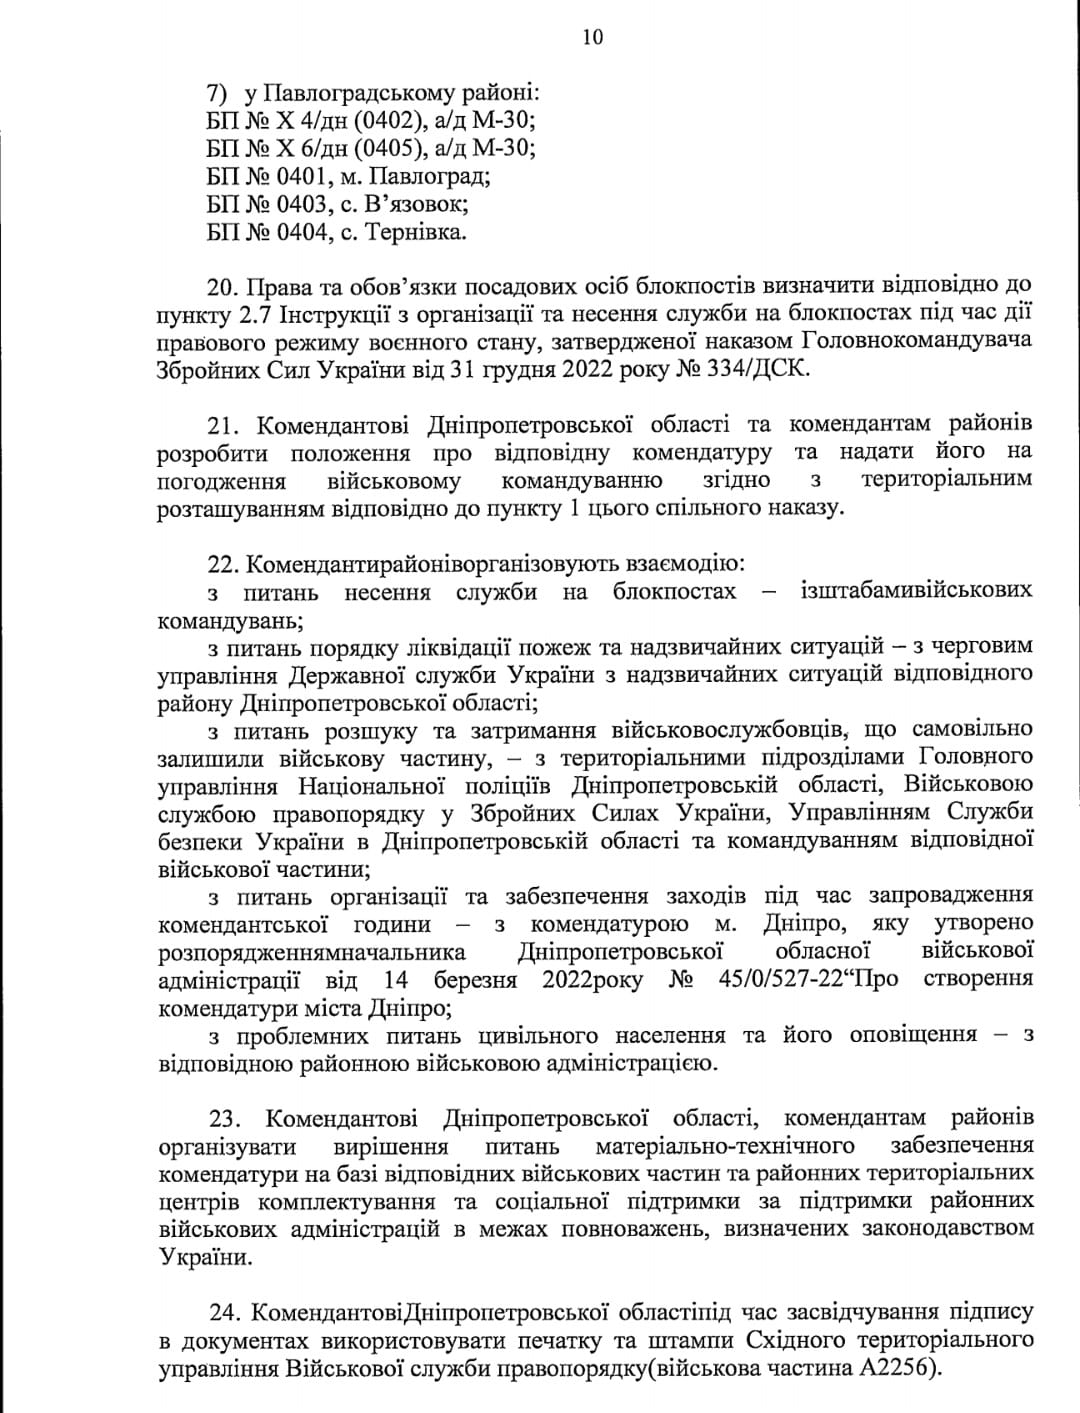 Новости Днепра про На Дніпропетровщині встановлять додаткові блокпости, де можуть перевіряти документи